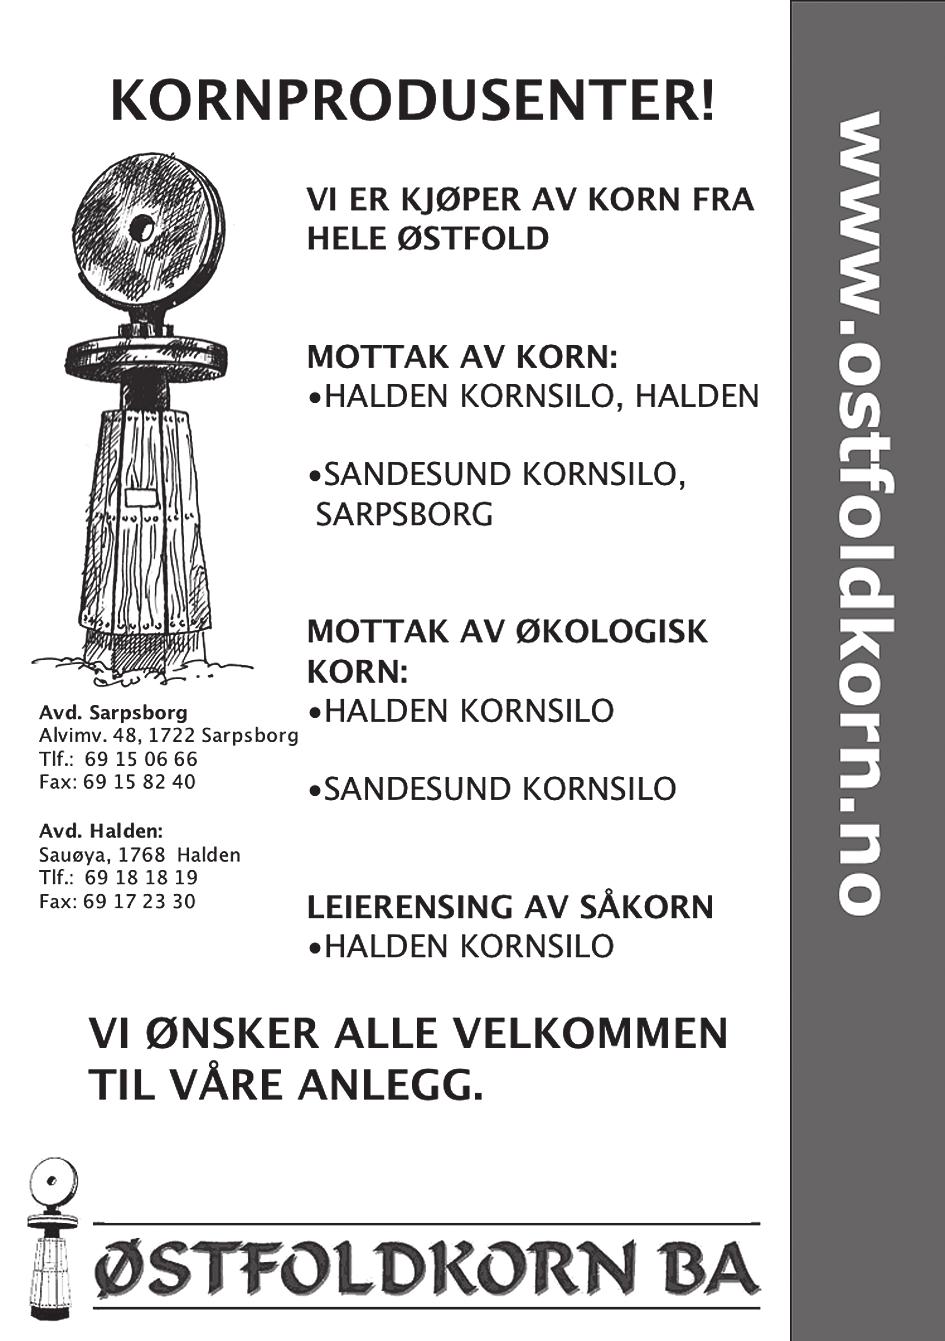 Premieutdeling i Østfold Travforbunds serie for stallansatte på seremoniplass etter det 7. løp. Gavekort, verdi kr. 5.000, 3.